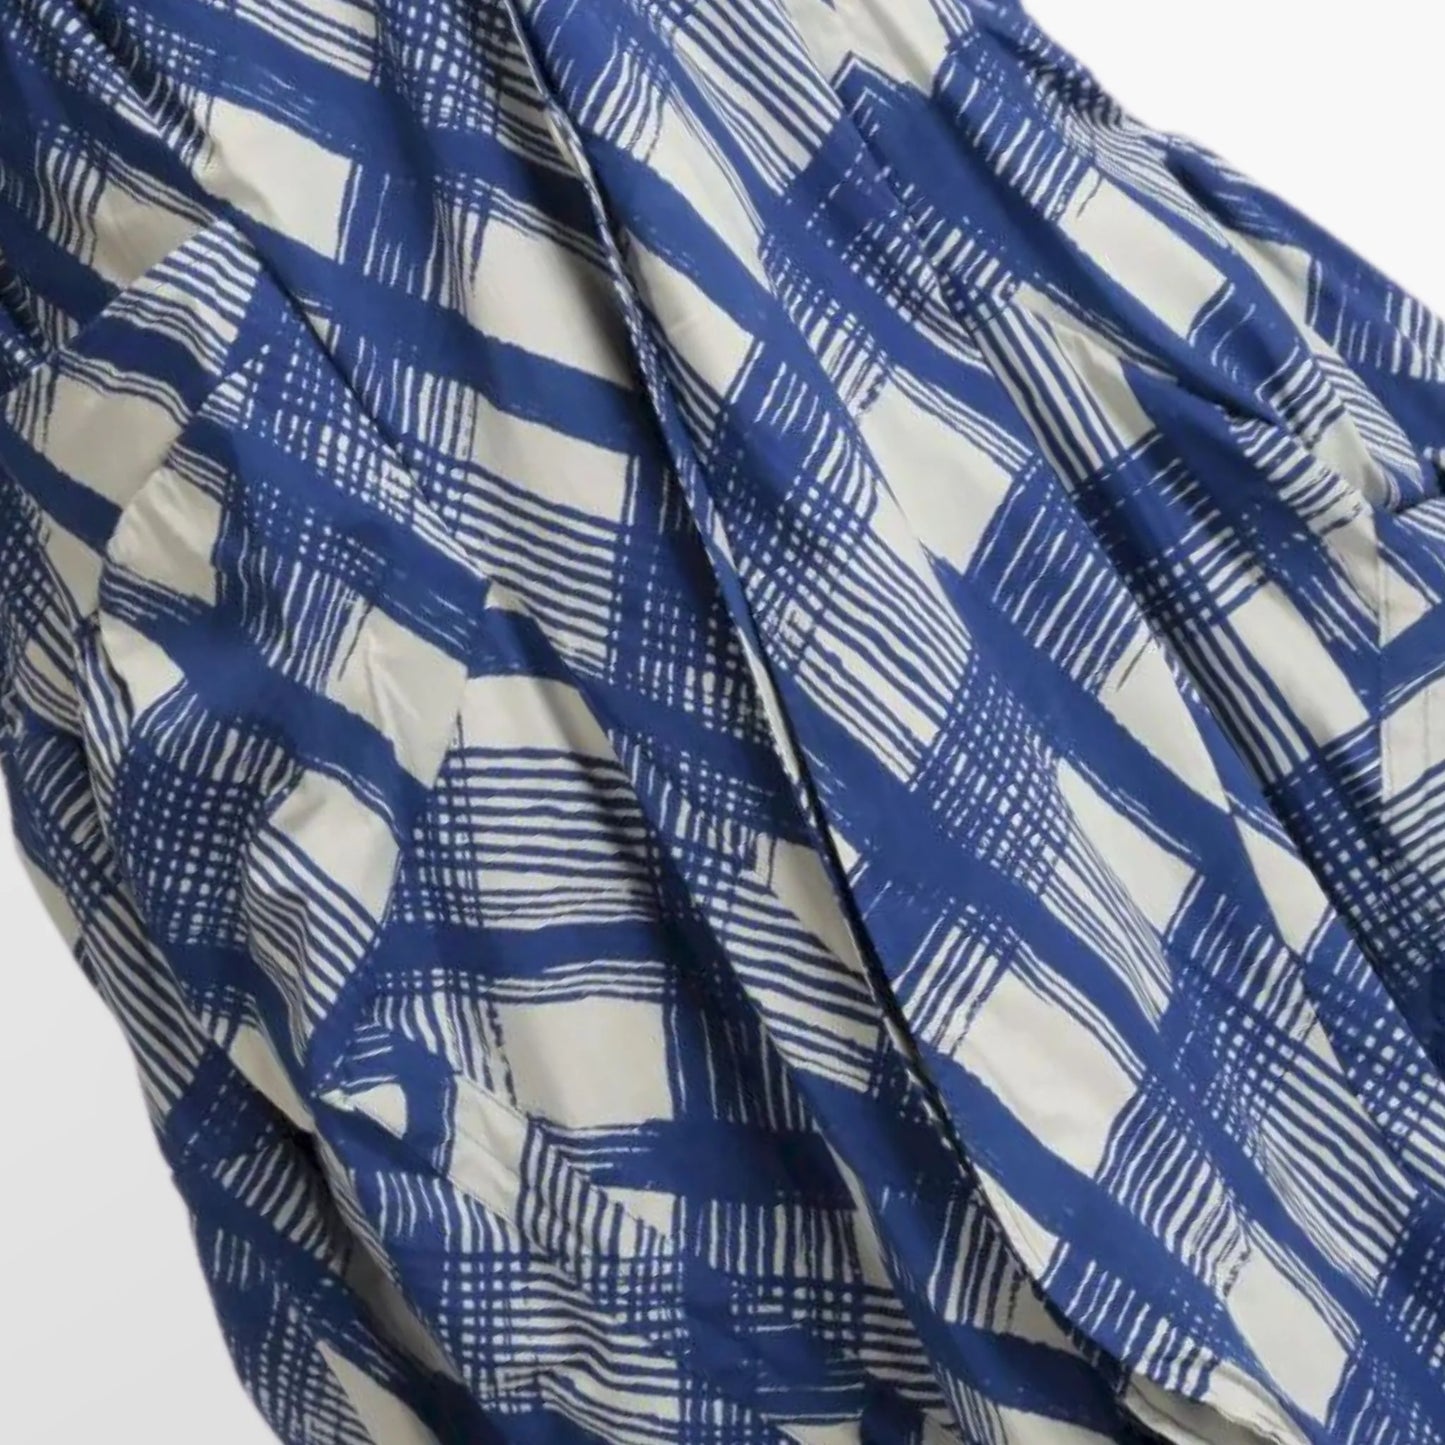 Sommer Mantel in Gerafft Form aus luftiger Popeline Qualität, Arabella in Blau-Grau